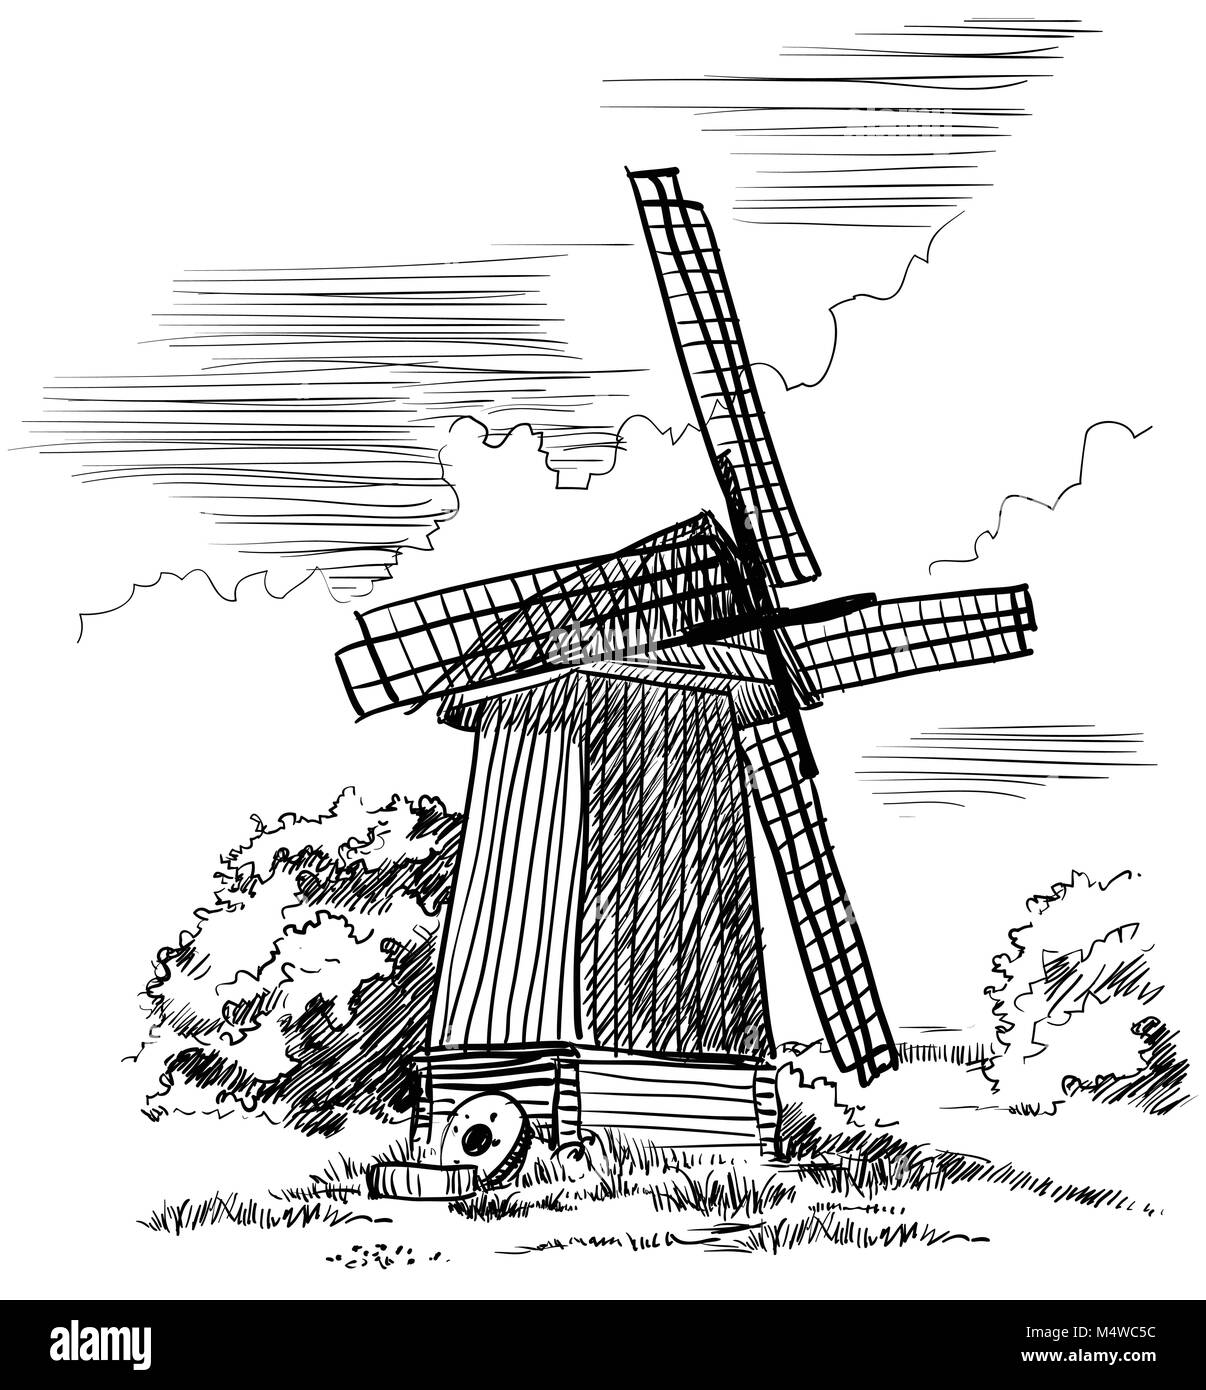 Mühle isoliert Handzeichnung Vector Illustration in schwarzer Farbe auf weißem Hintergrund Stock Vektor